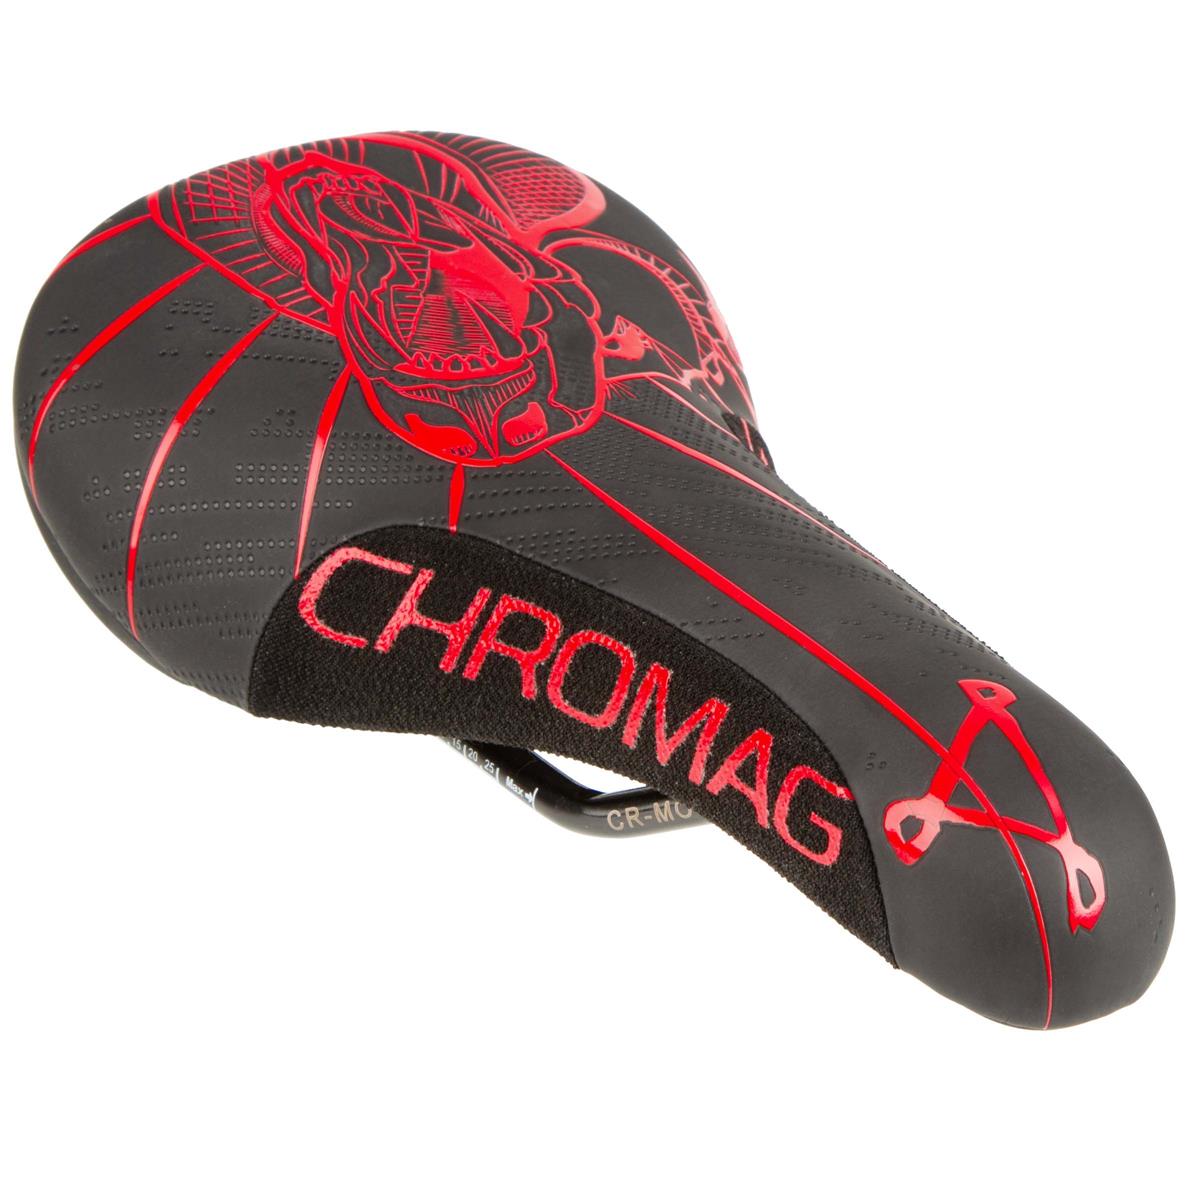 Chromag Selle Overture 2019 243 x 136 mm, Black/Red